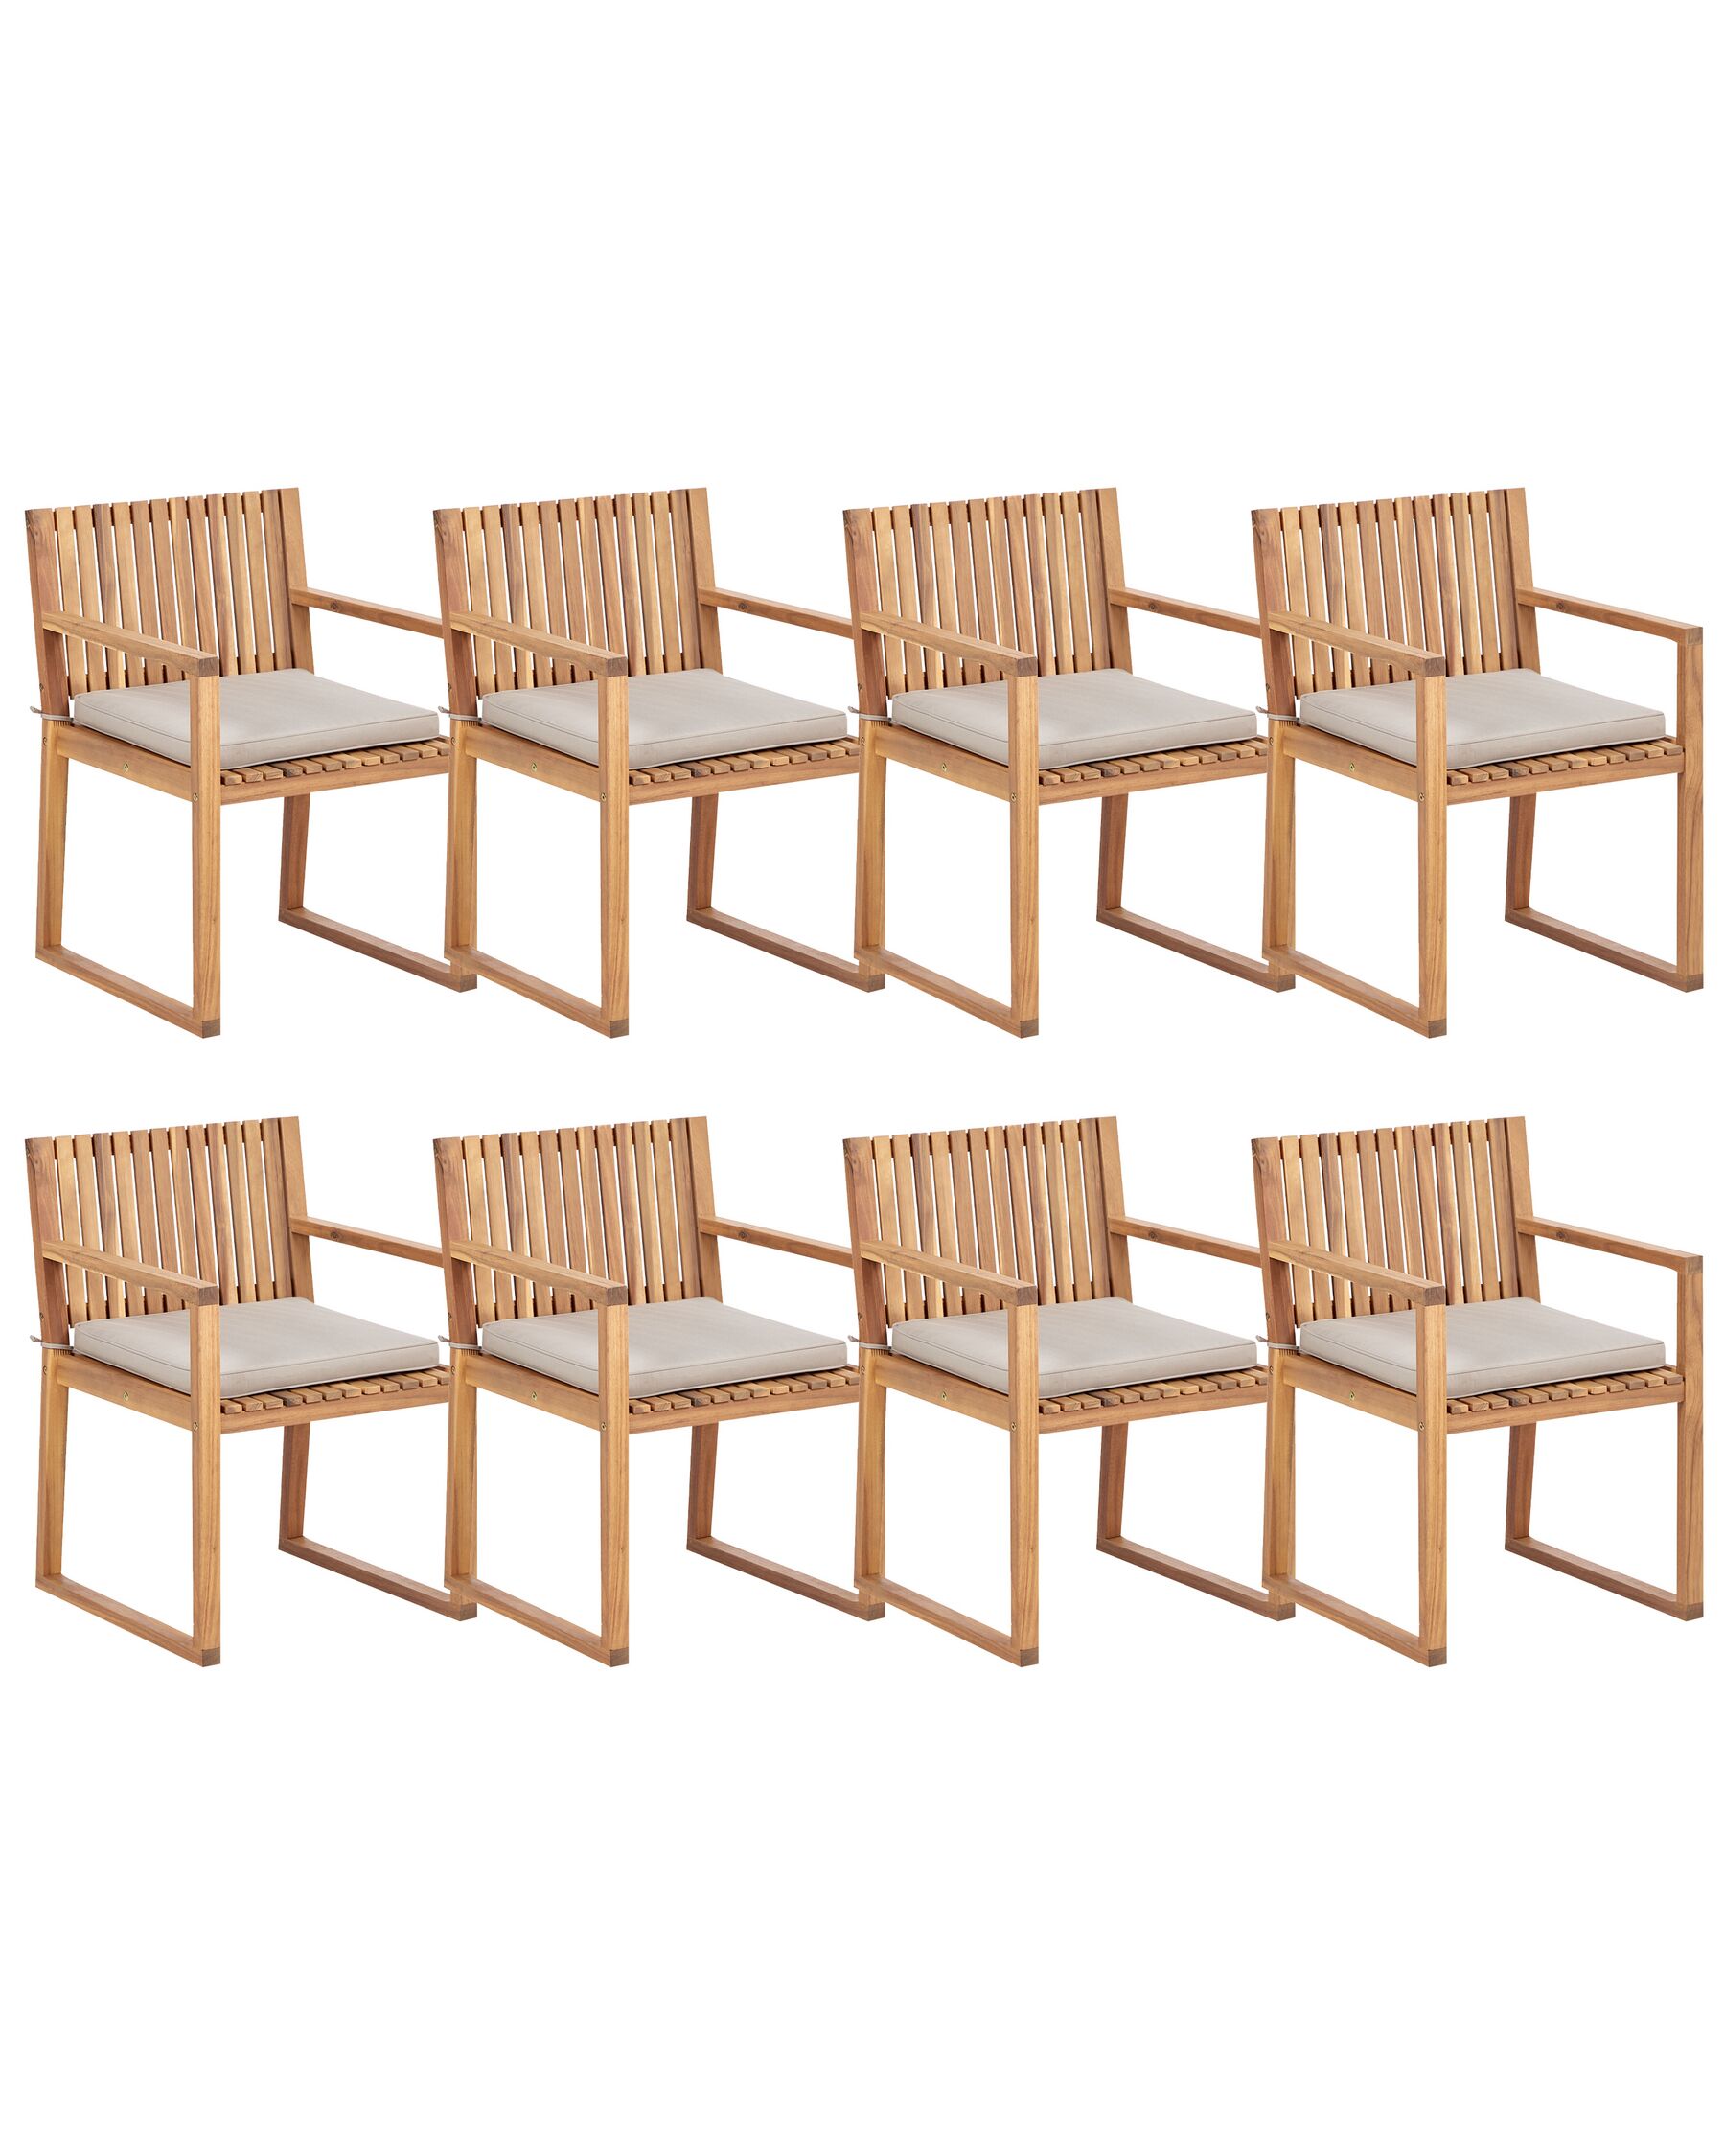 Sada 8 záhradných stoličiek svetlé certifikované akáciové drevo/sivobéžové podsedáky SASSARI II_923852